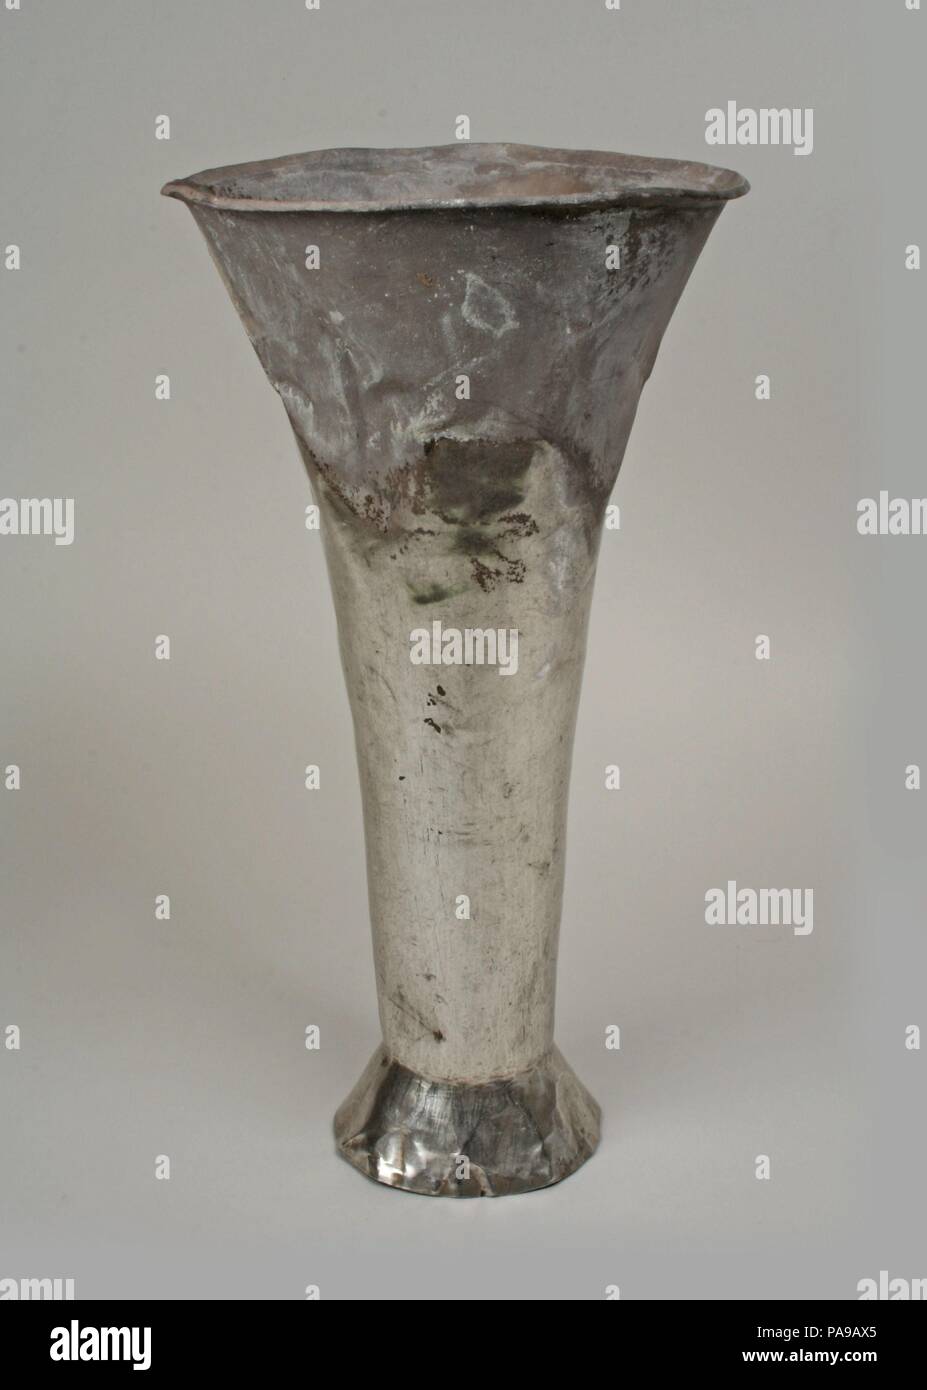 Bécher. Culture : Chimú. Dimensions : H. 12 7/8 x diam. 7 in. (32,7 x 17,8 cm). Date : 12e-15e siècle. Musée : Metropolitan Museum of Art, New York, USA. Banque D'Images